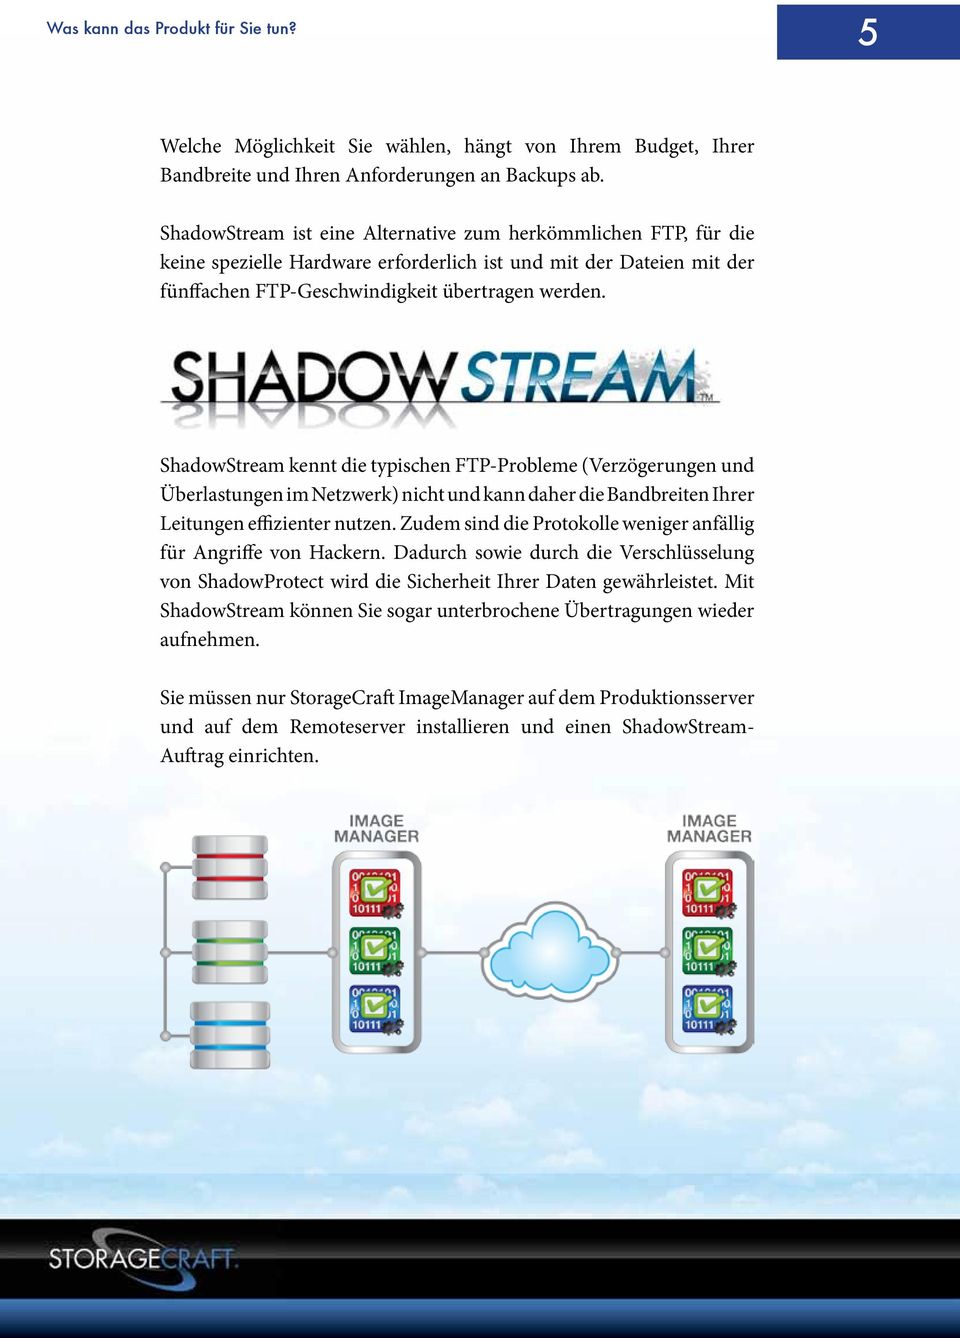 ShadowStream kennt die typischen FTP-Probleme (Verzögerungen und Überlastungen im Netzwerk) nicht und kann daher die Bandbreiten Ihrer Leitungen effizienter nutzen.